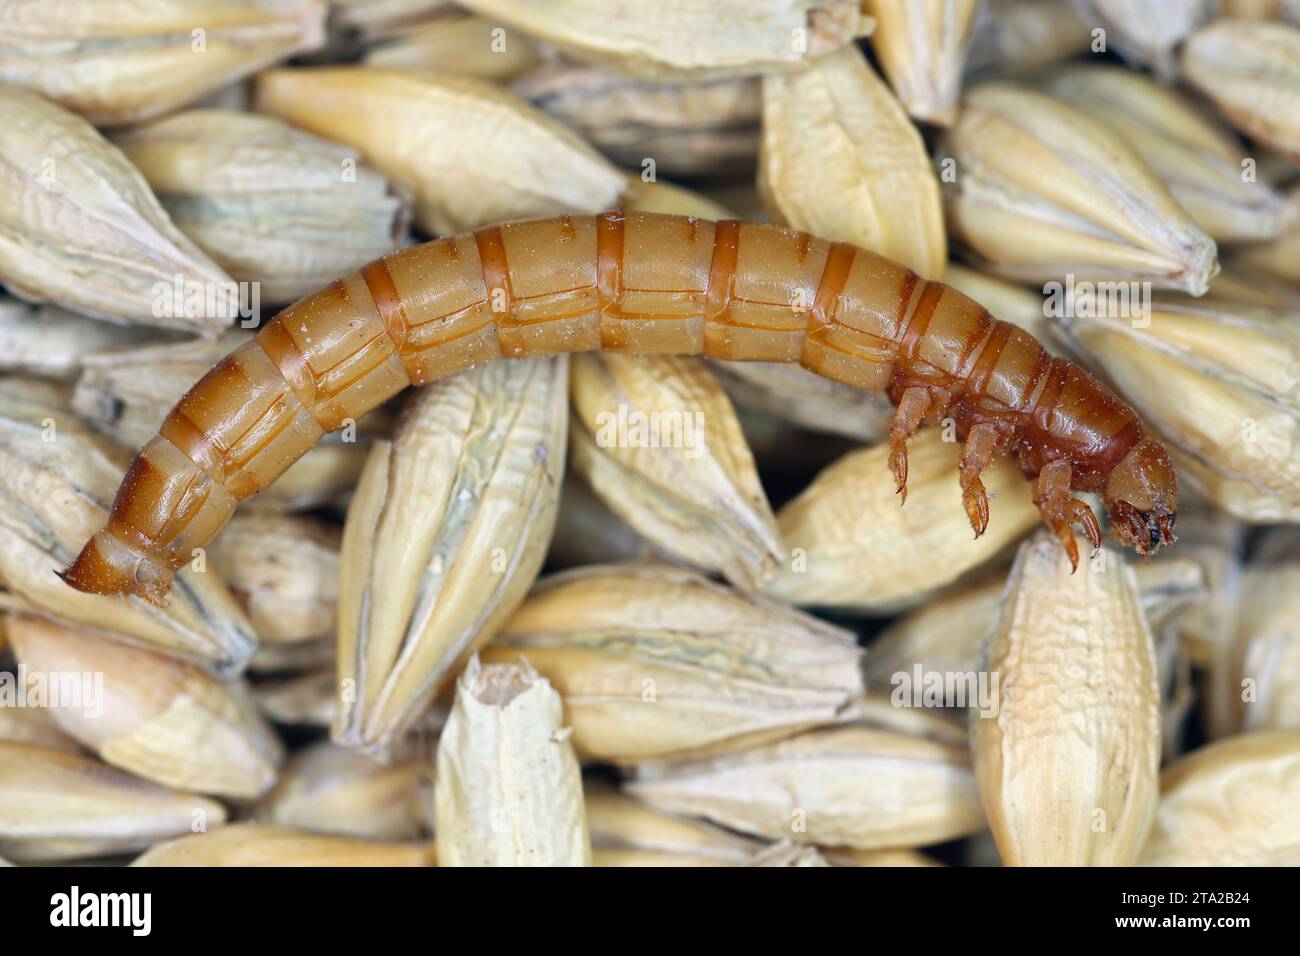 Yellow mealworm Tenebrio molitor beetle larva on barley grain. Stock Photo